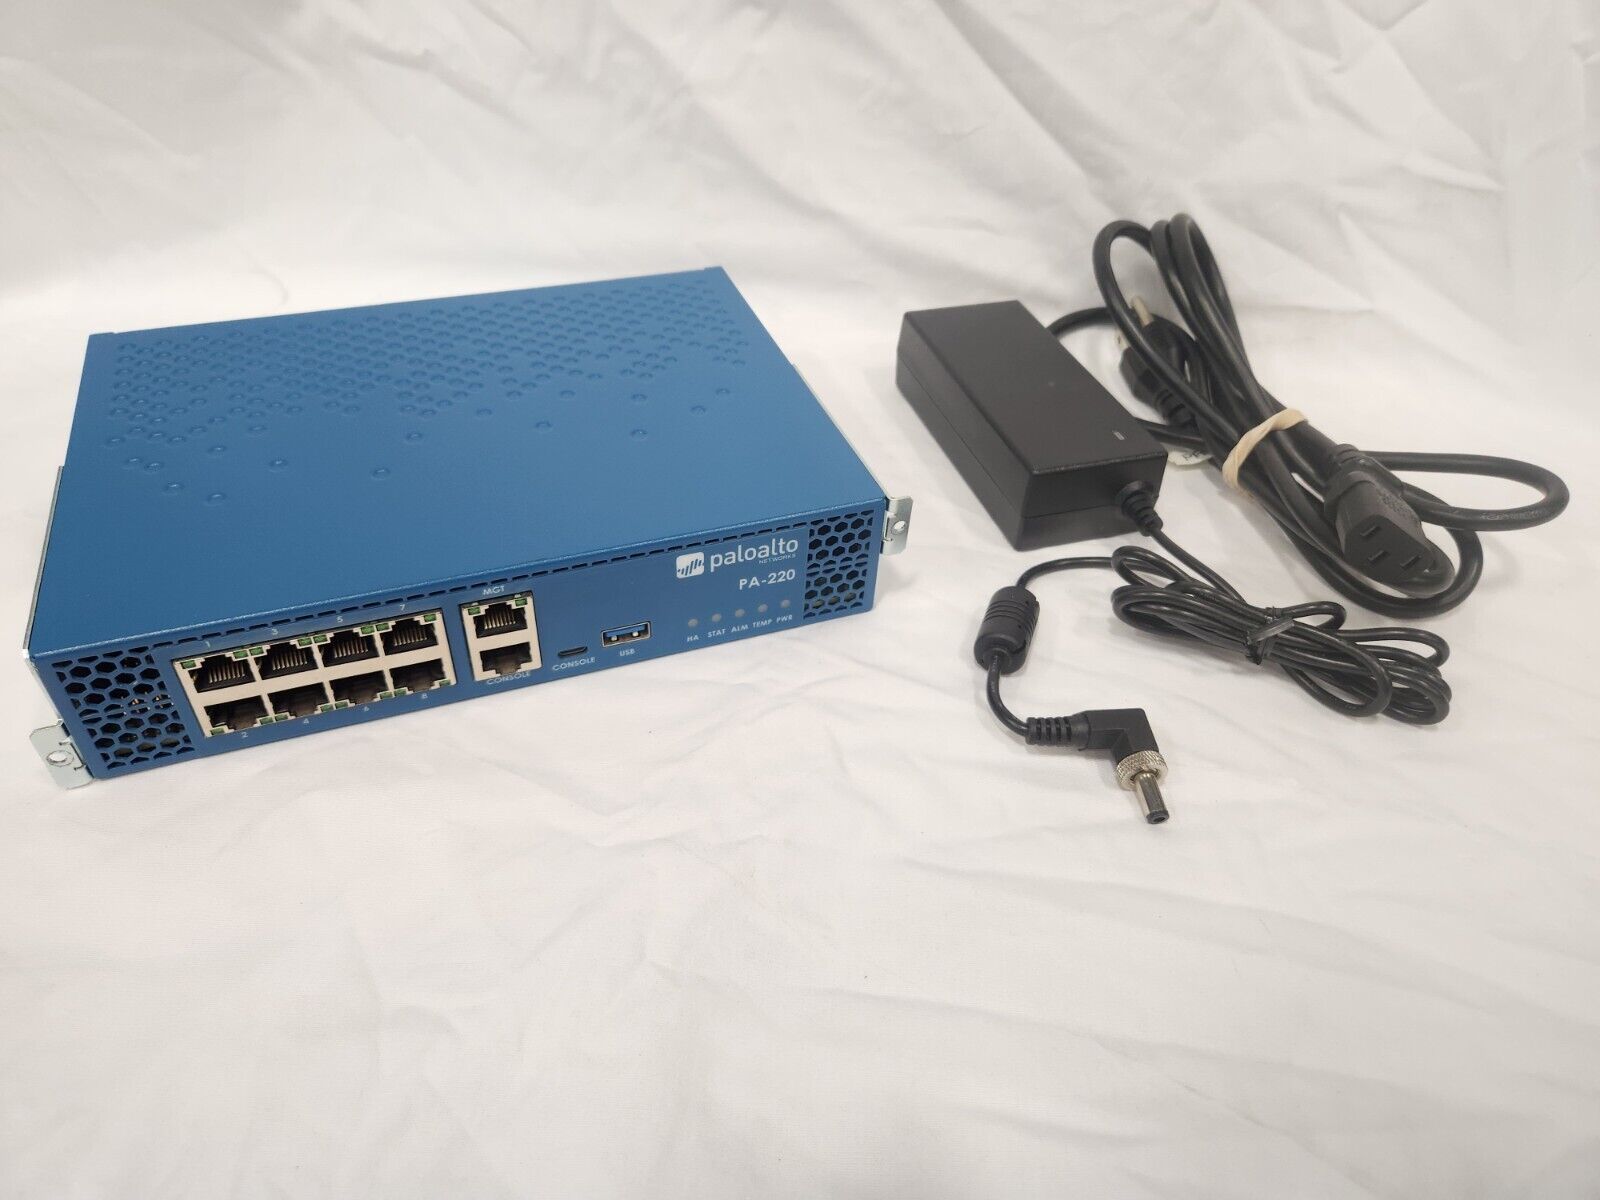 Palo Alto PAN-PA-220 Next Gen Network Security Firewall Appliance